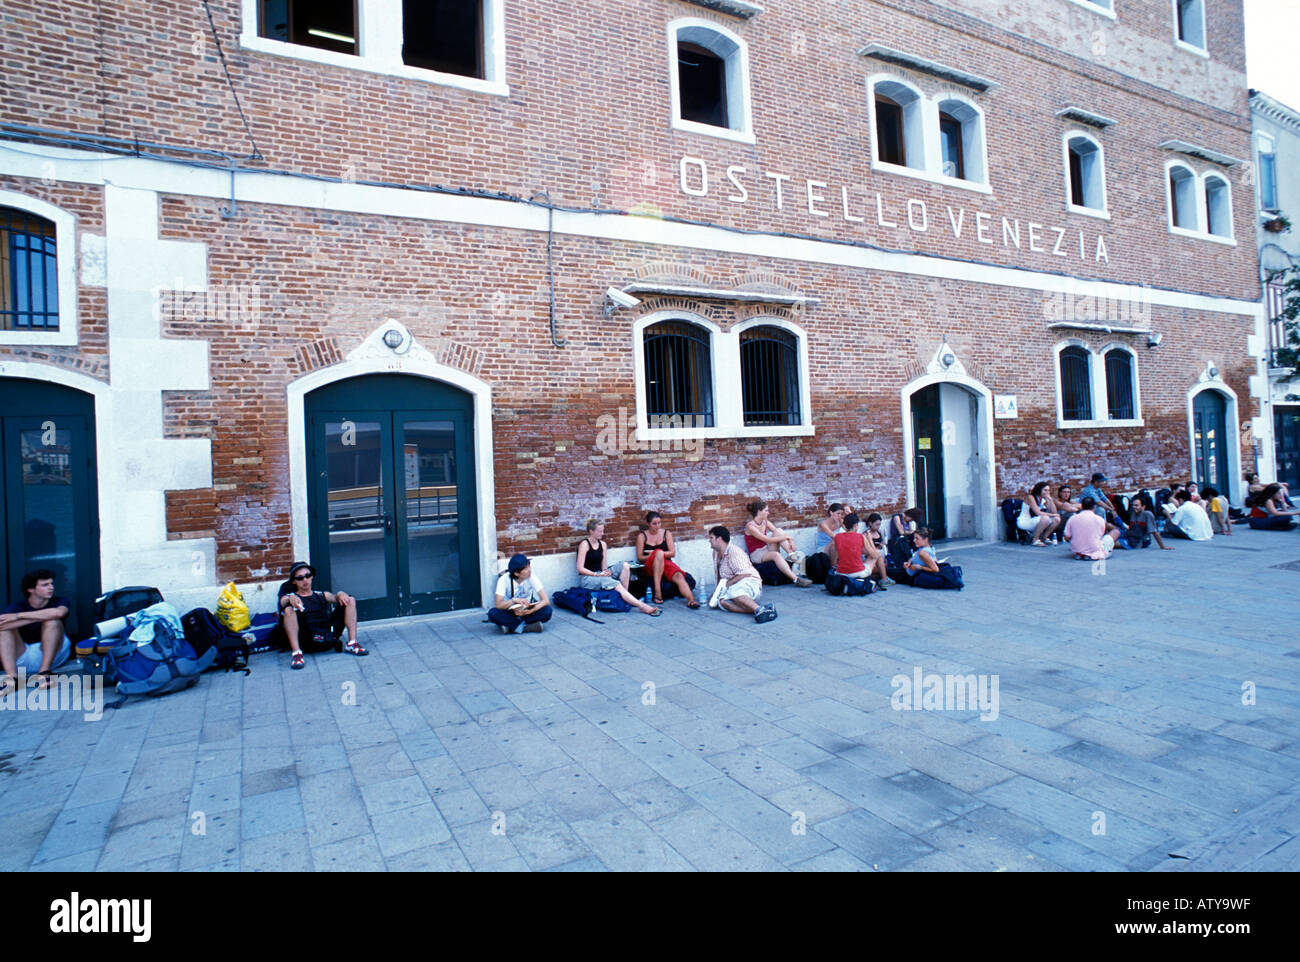 Youth Hostel Venice Banque D Image Et Photos Alamy